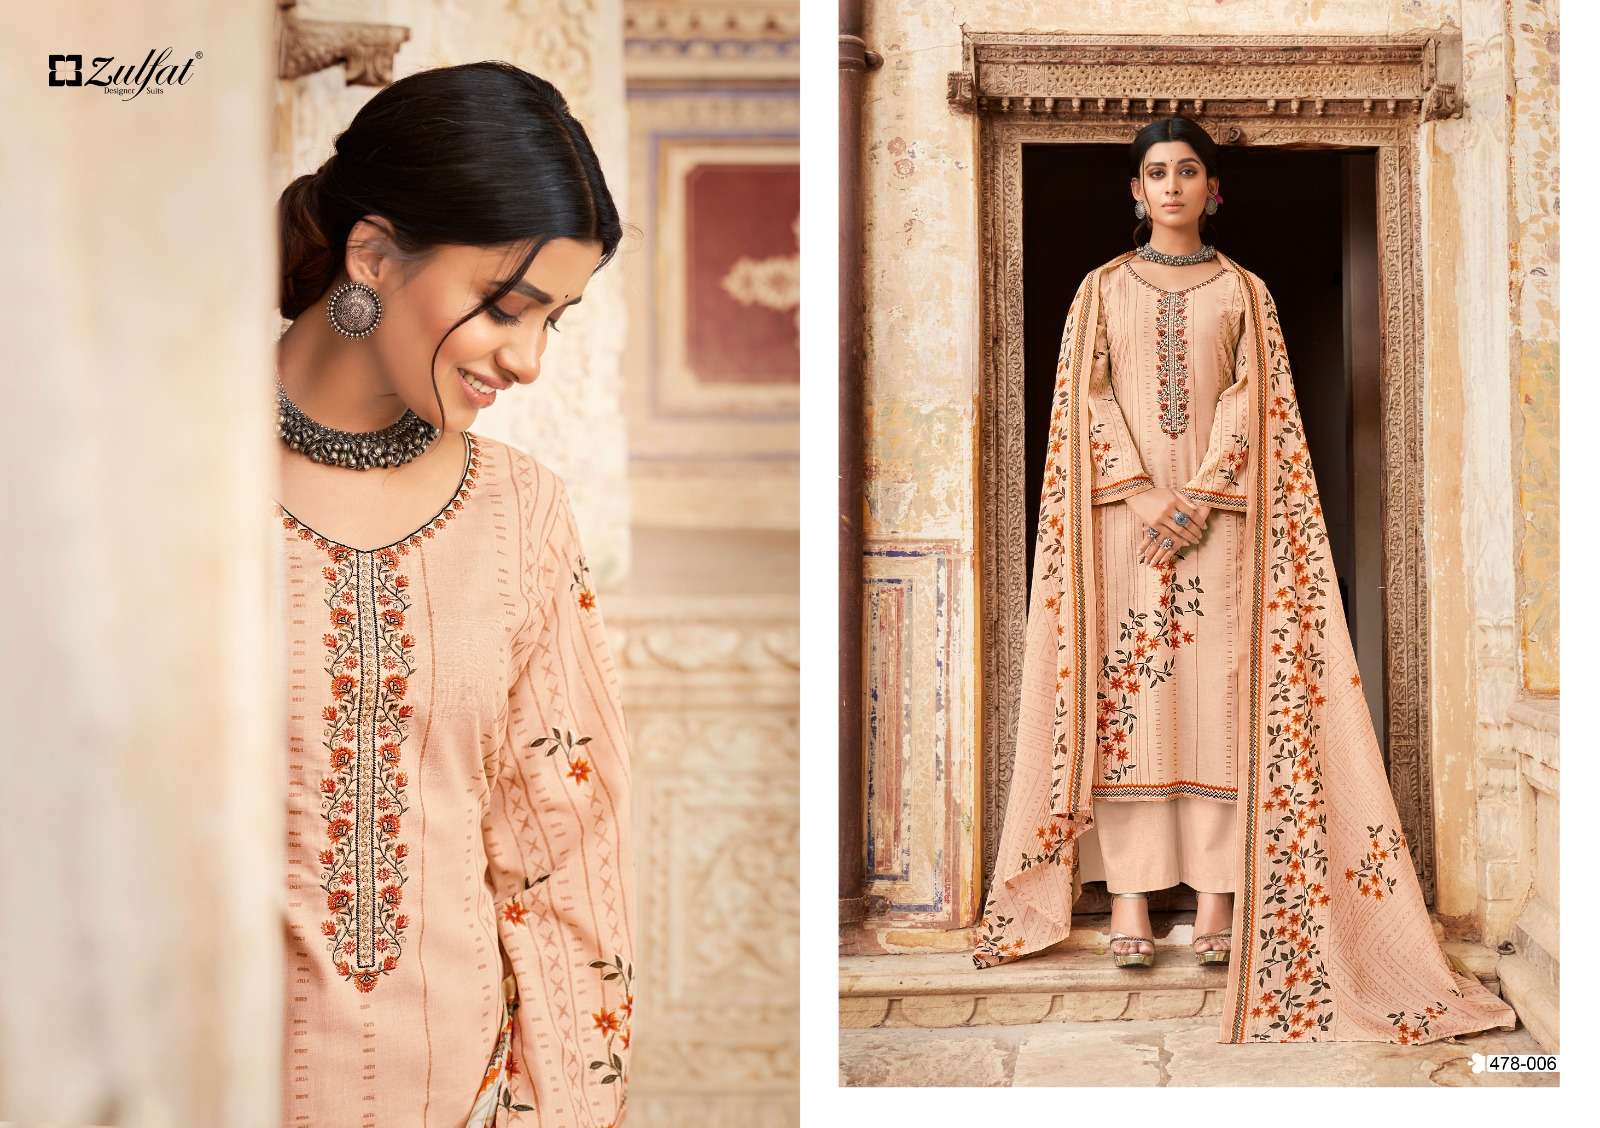 zulfat designer suits summer shades unstich designer salwar kameez catalogue wholesale price surat